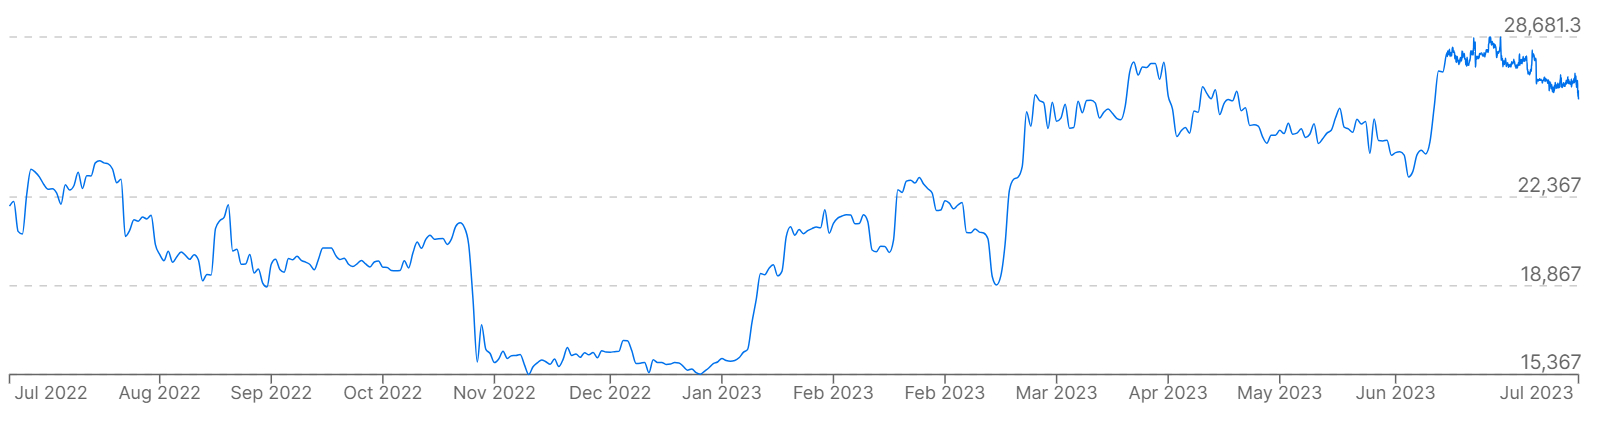 Un gráfico que muestra los precios de Bitcoin frente al euro durante el año pasado.